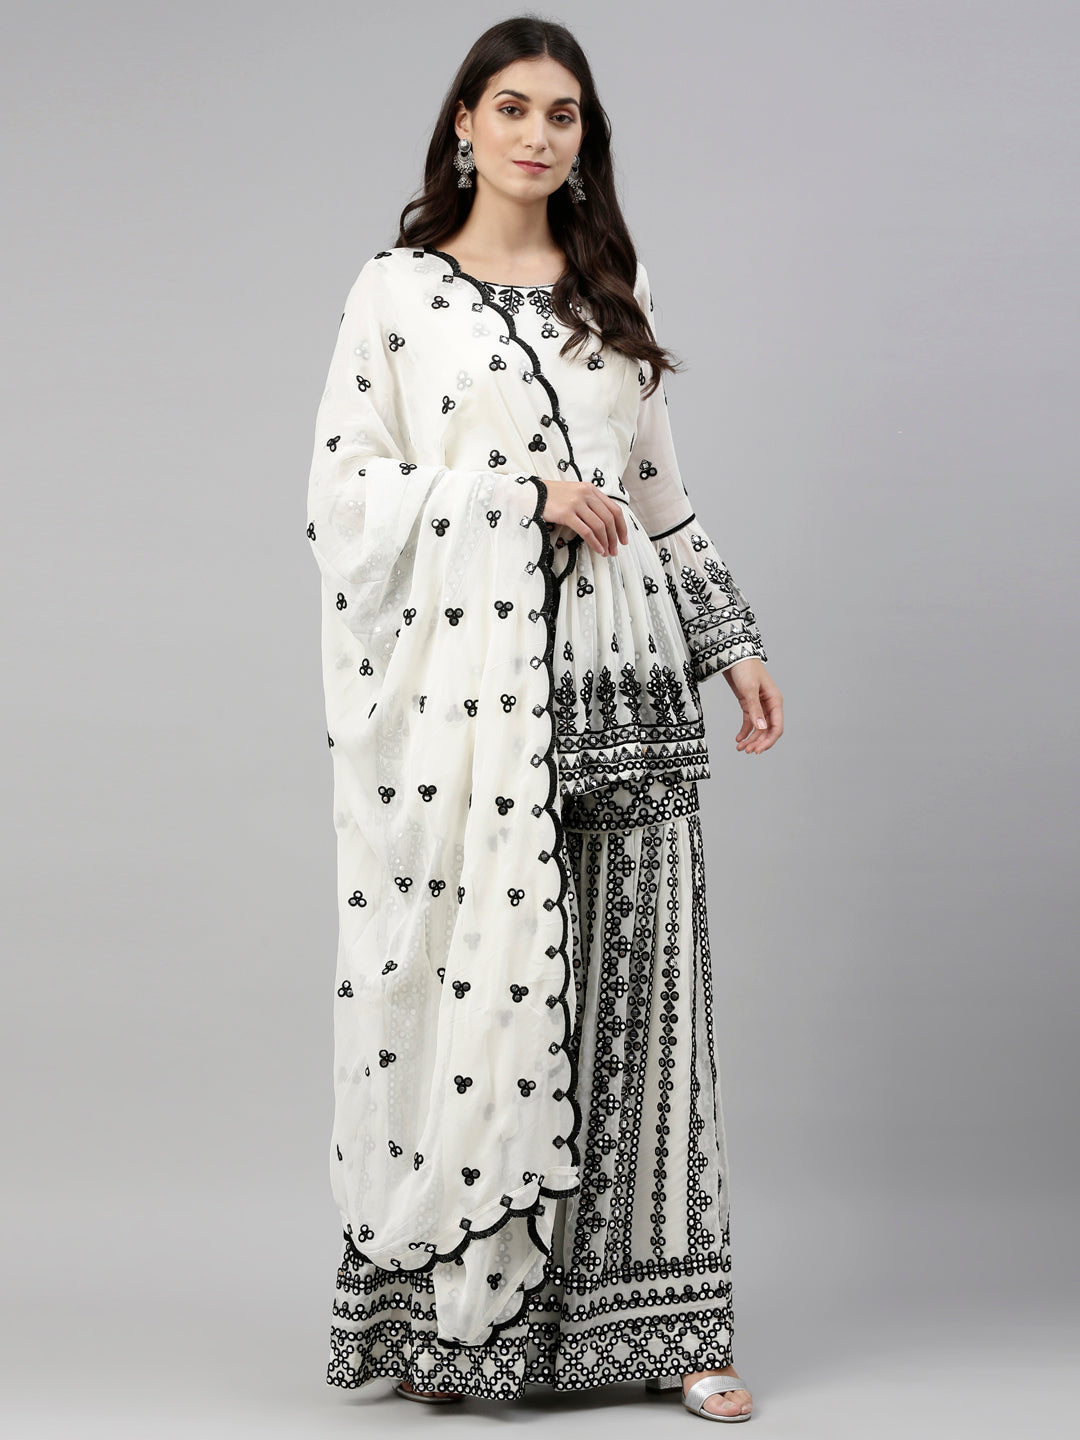 Neeru'S Cream Color, Mercerized Fabric Suit-Short Anarkali